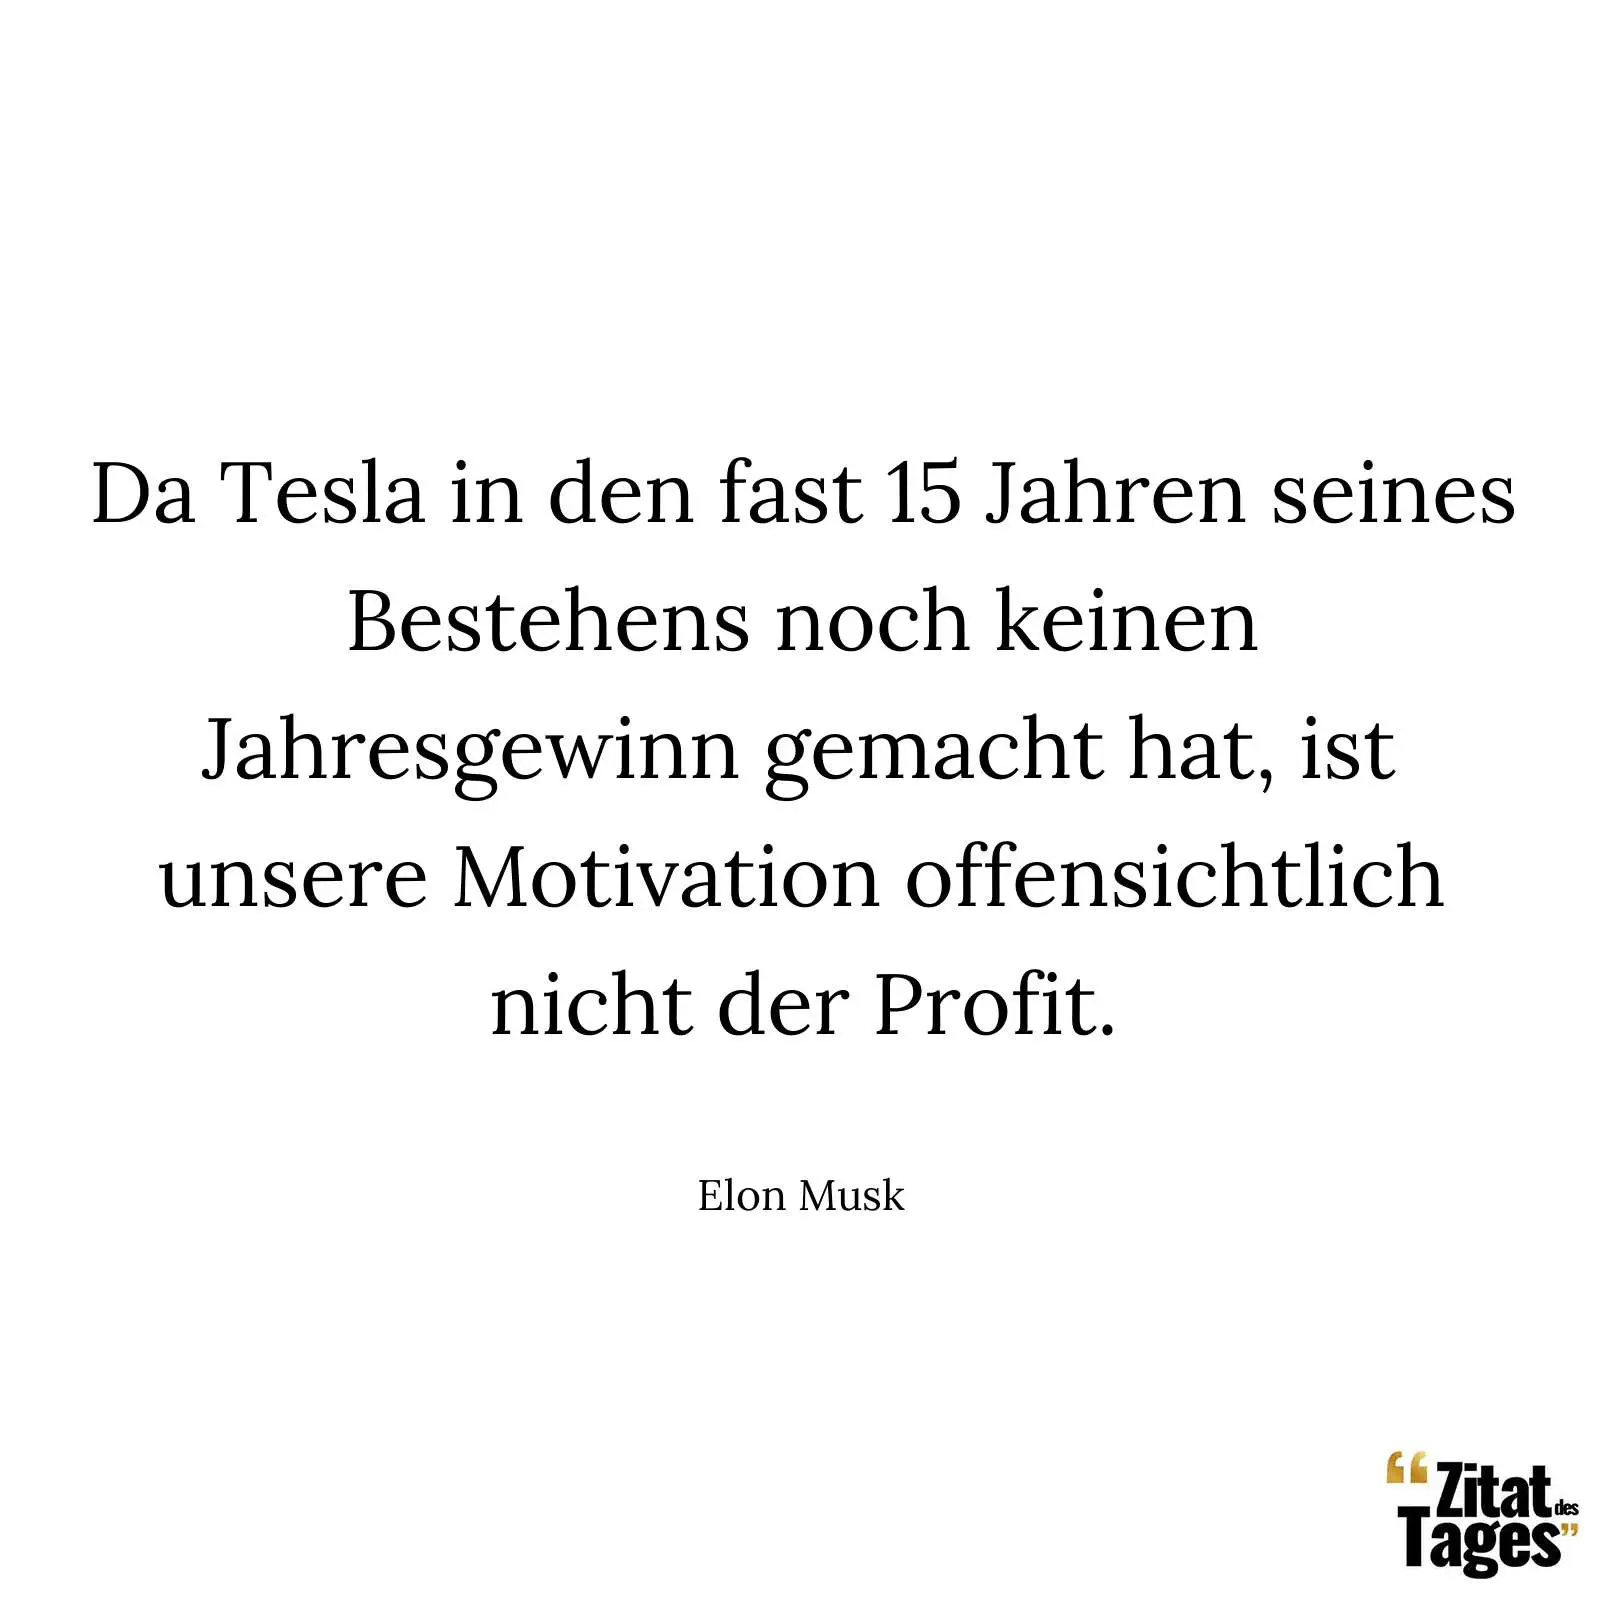 Da Tesla in den fast 15 Jahren seines Bestehens noch keinen Jahresgewinn gemacht hat, ist unsere Motivation offensichtlich nicht der Profit. - Elon Musk